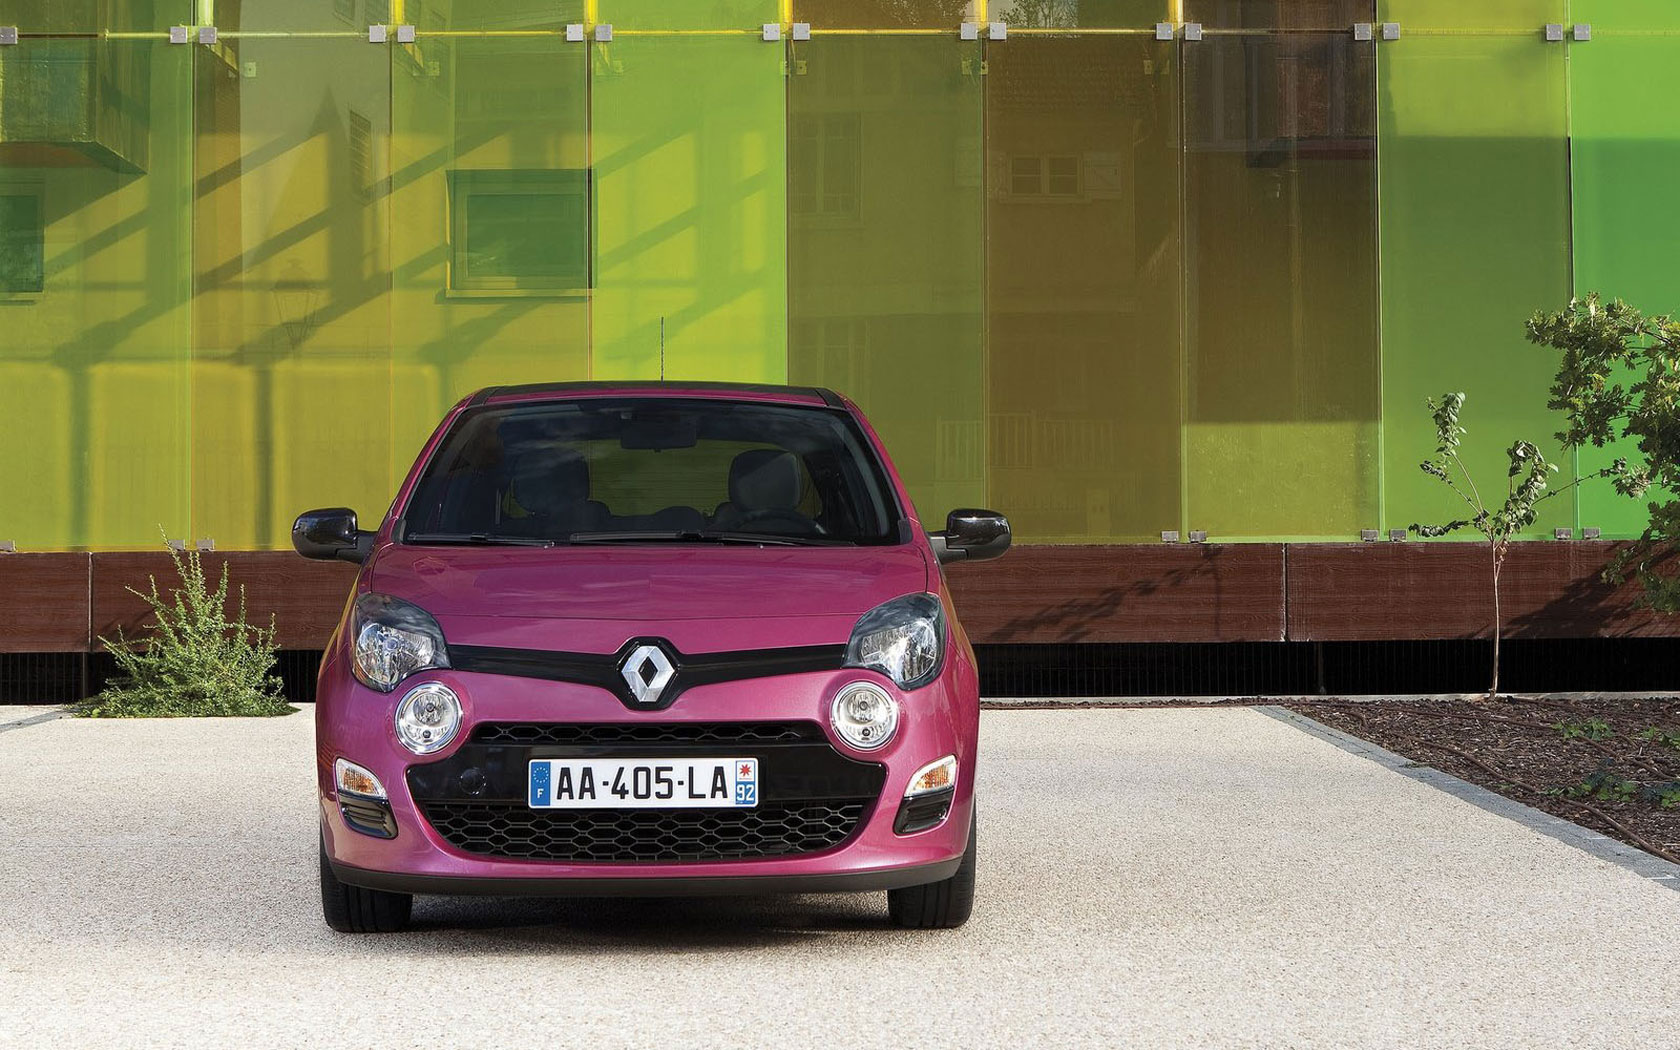  Renault Twingo (2012-2014)